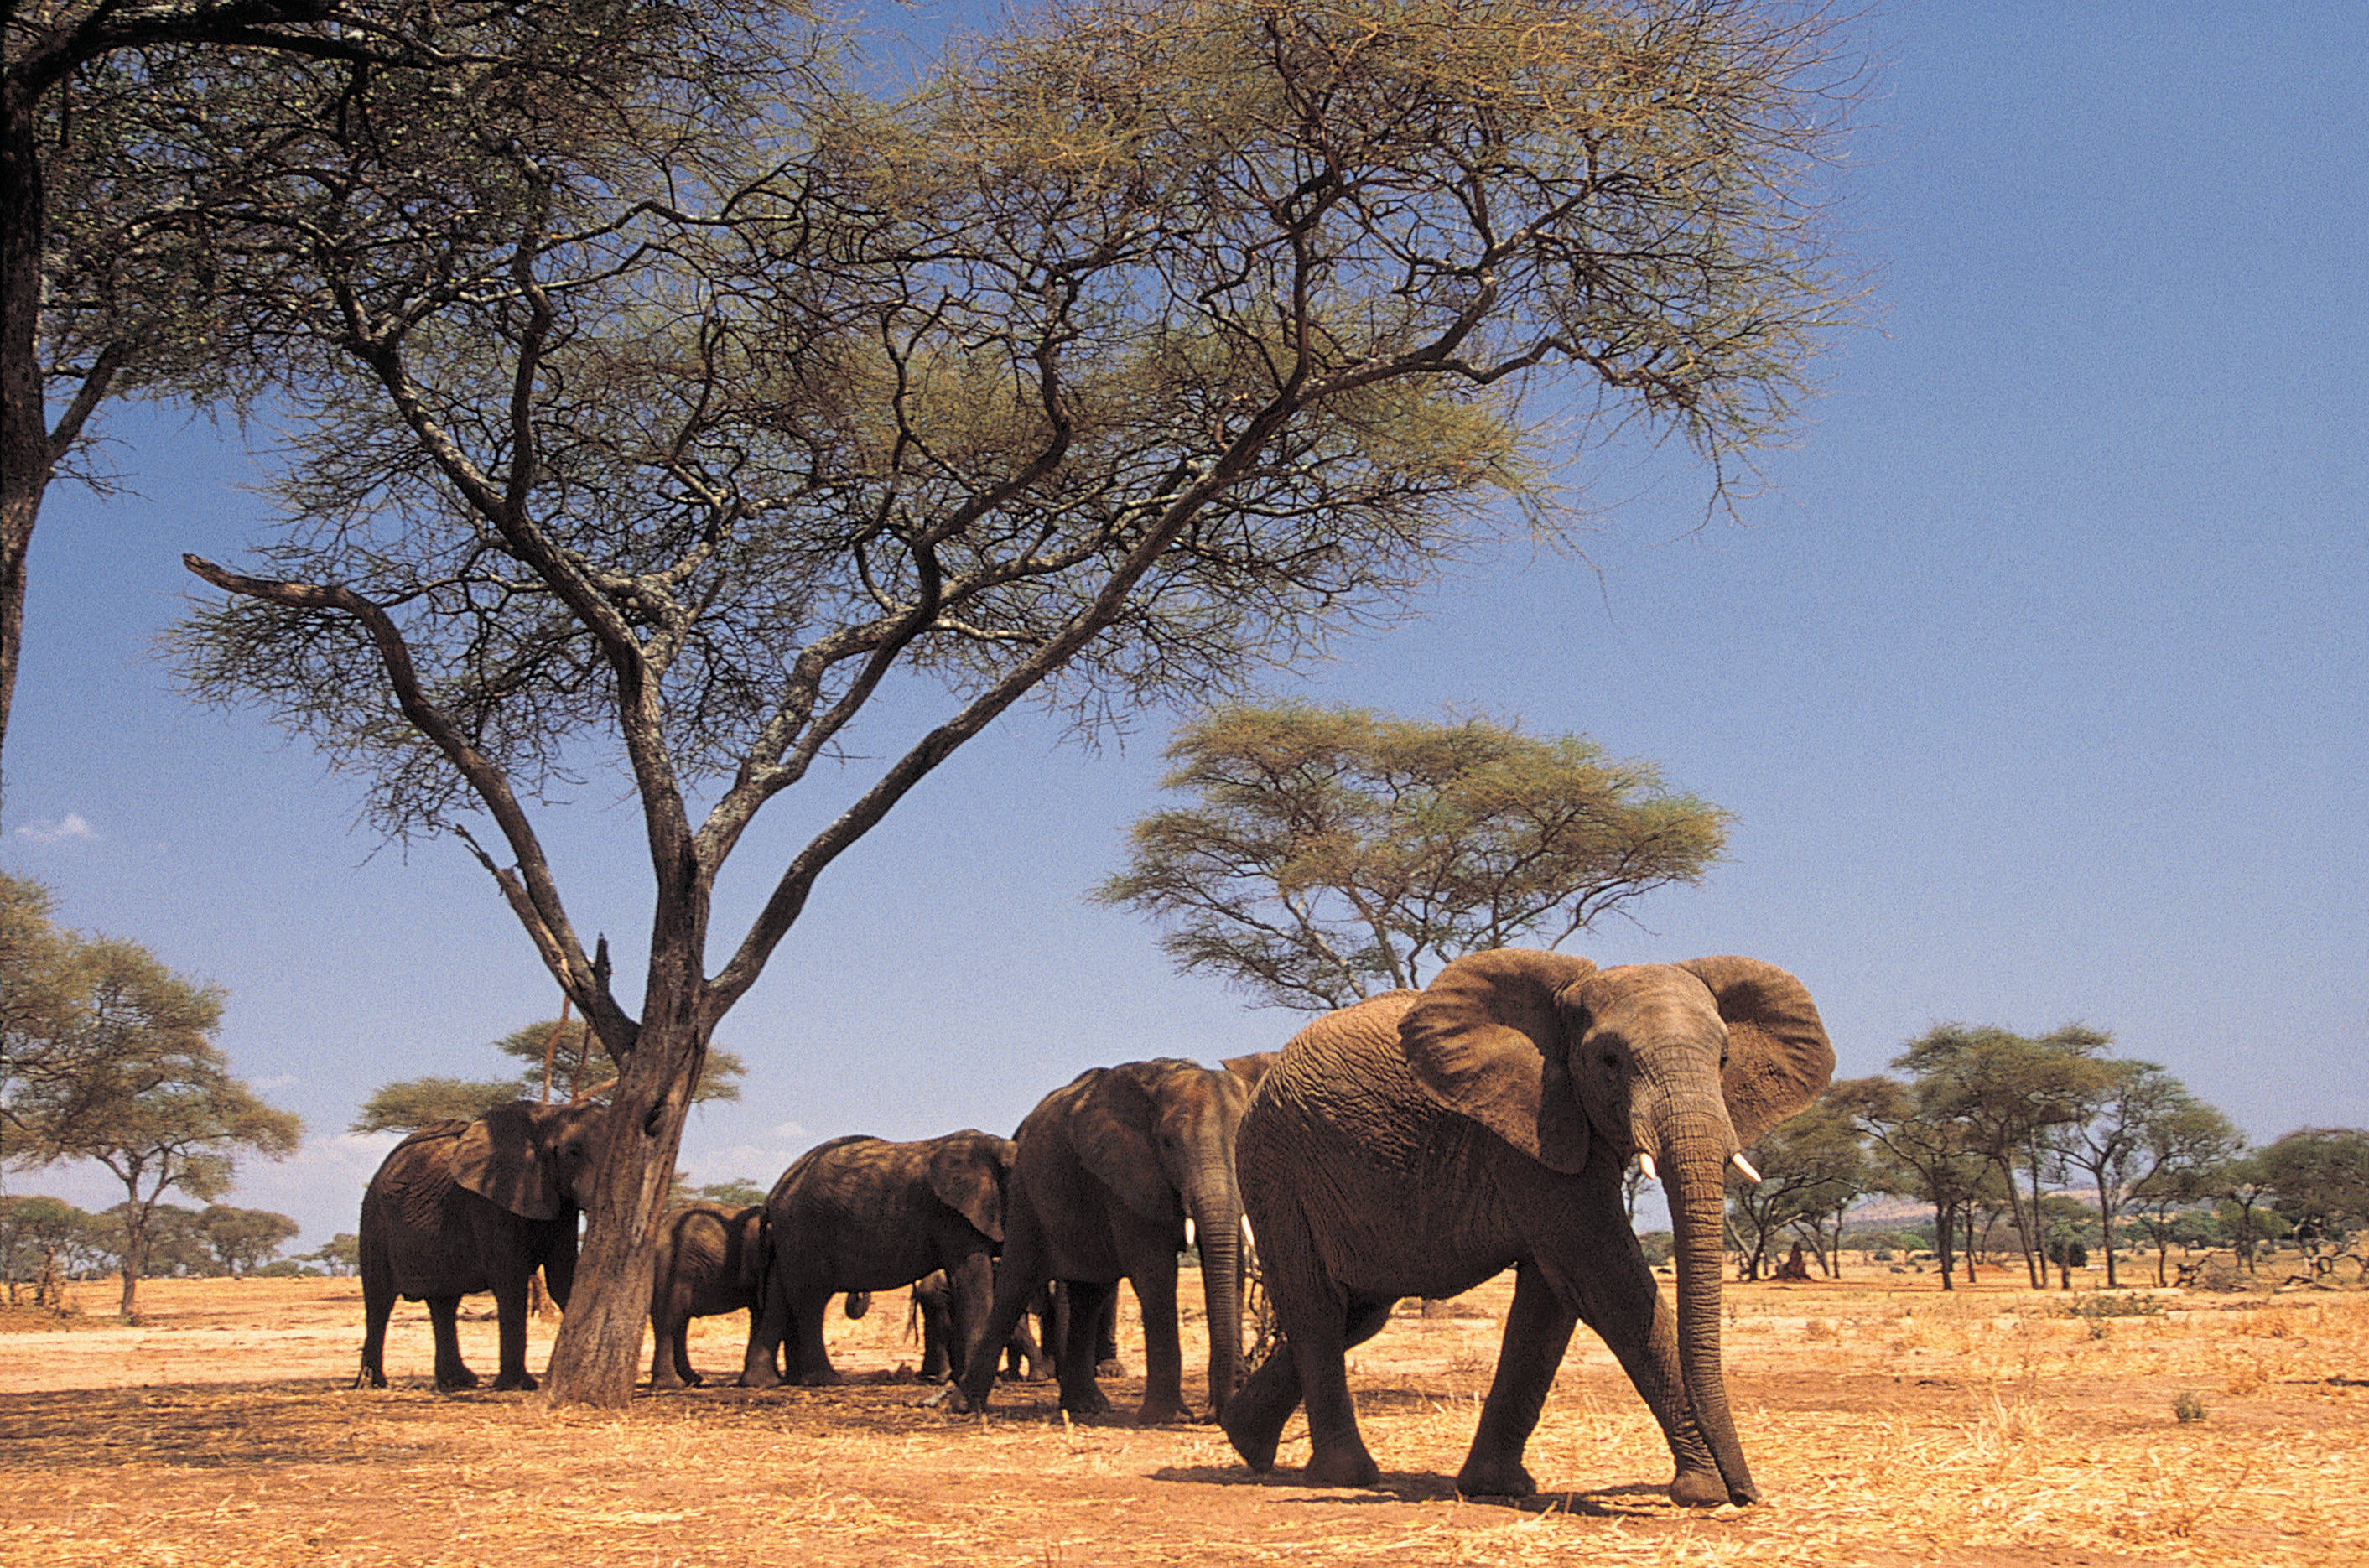 Саванной восточной африки. Саванна Восточной Африки Савана. Всемирный день слонов 30 ноября. Саванны Индостана. Всемирный день слонов «Слоноуин» 30 ноября.